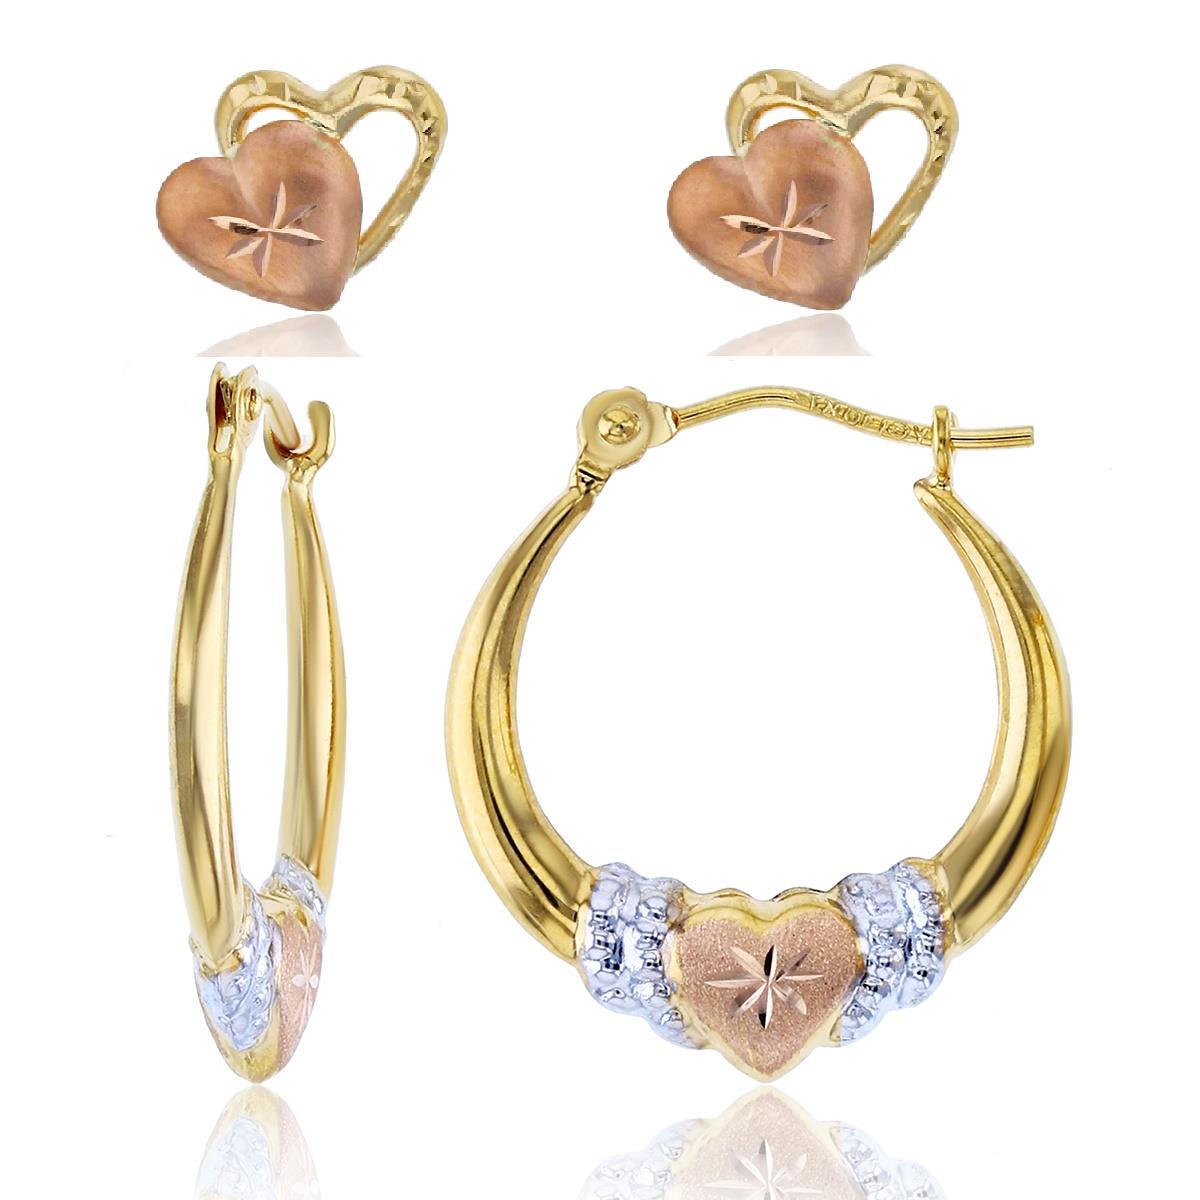 10K Gold 18mm Tricolor Heart Hoop & 8mm Heart Stud Earring Set